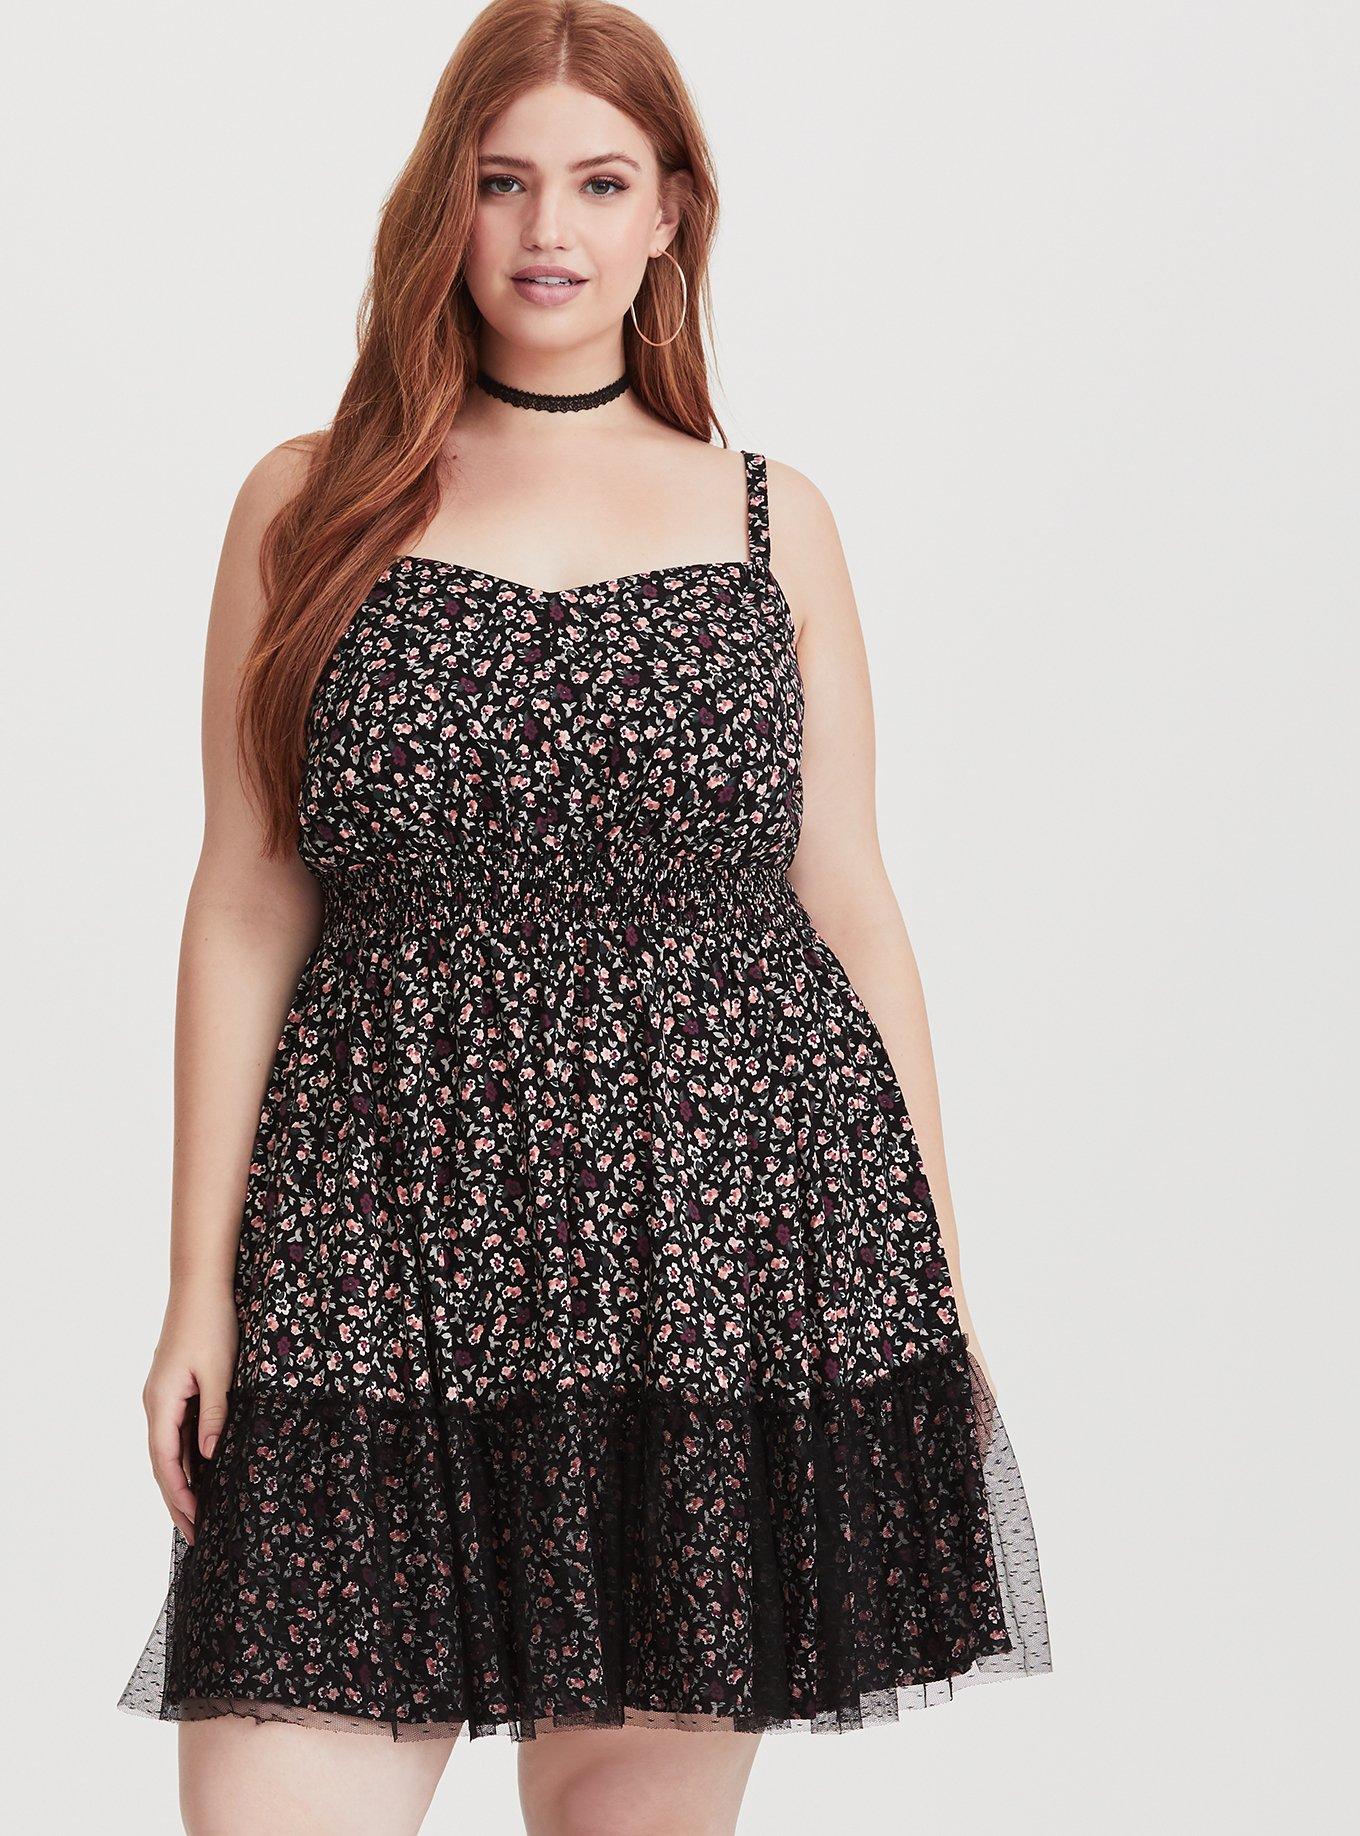 Plus Size - Black Floral Lace Overlay Challis Dress - Torrid